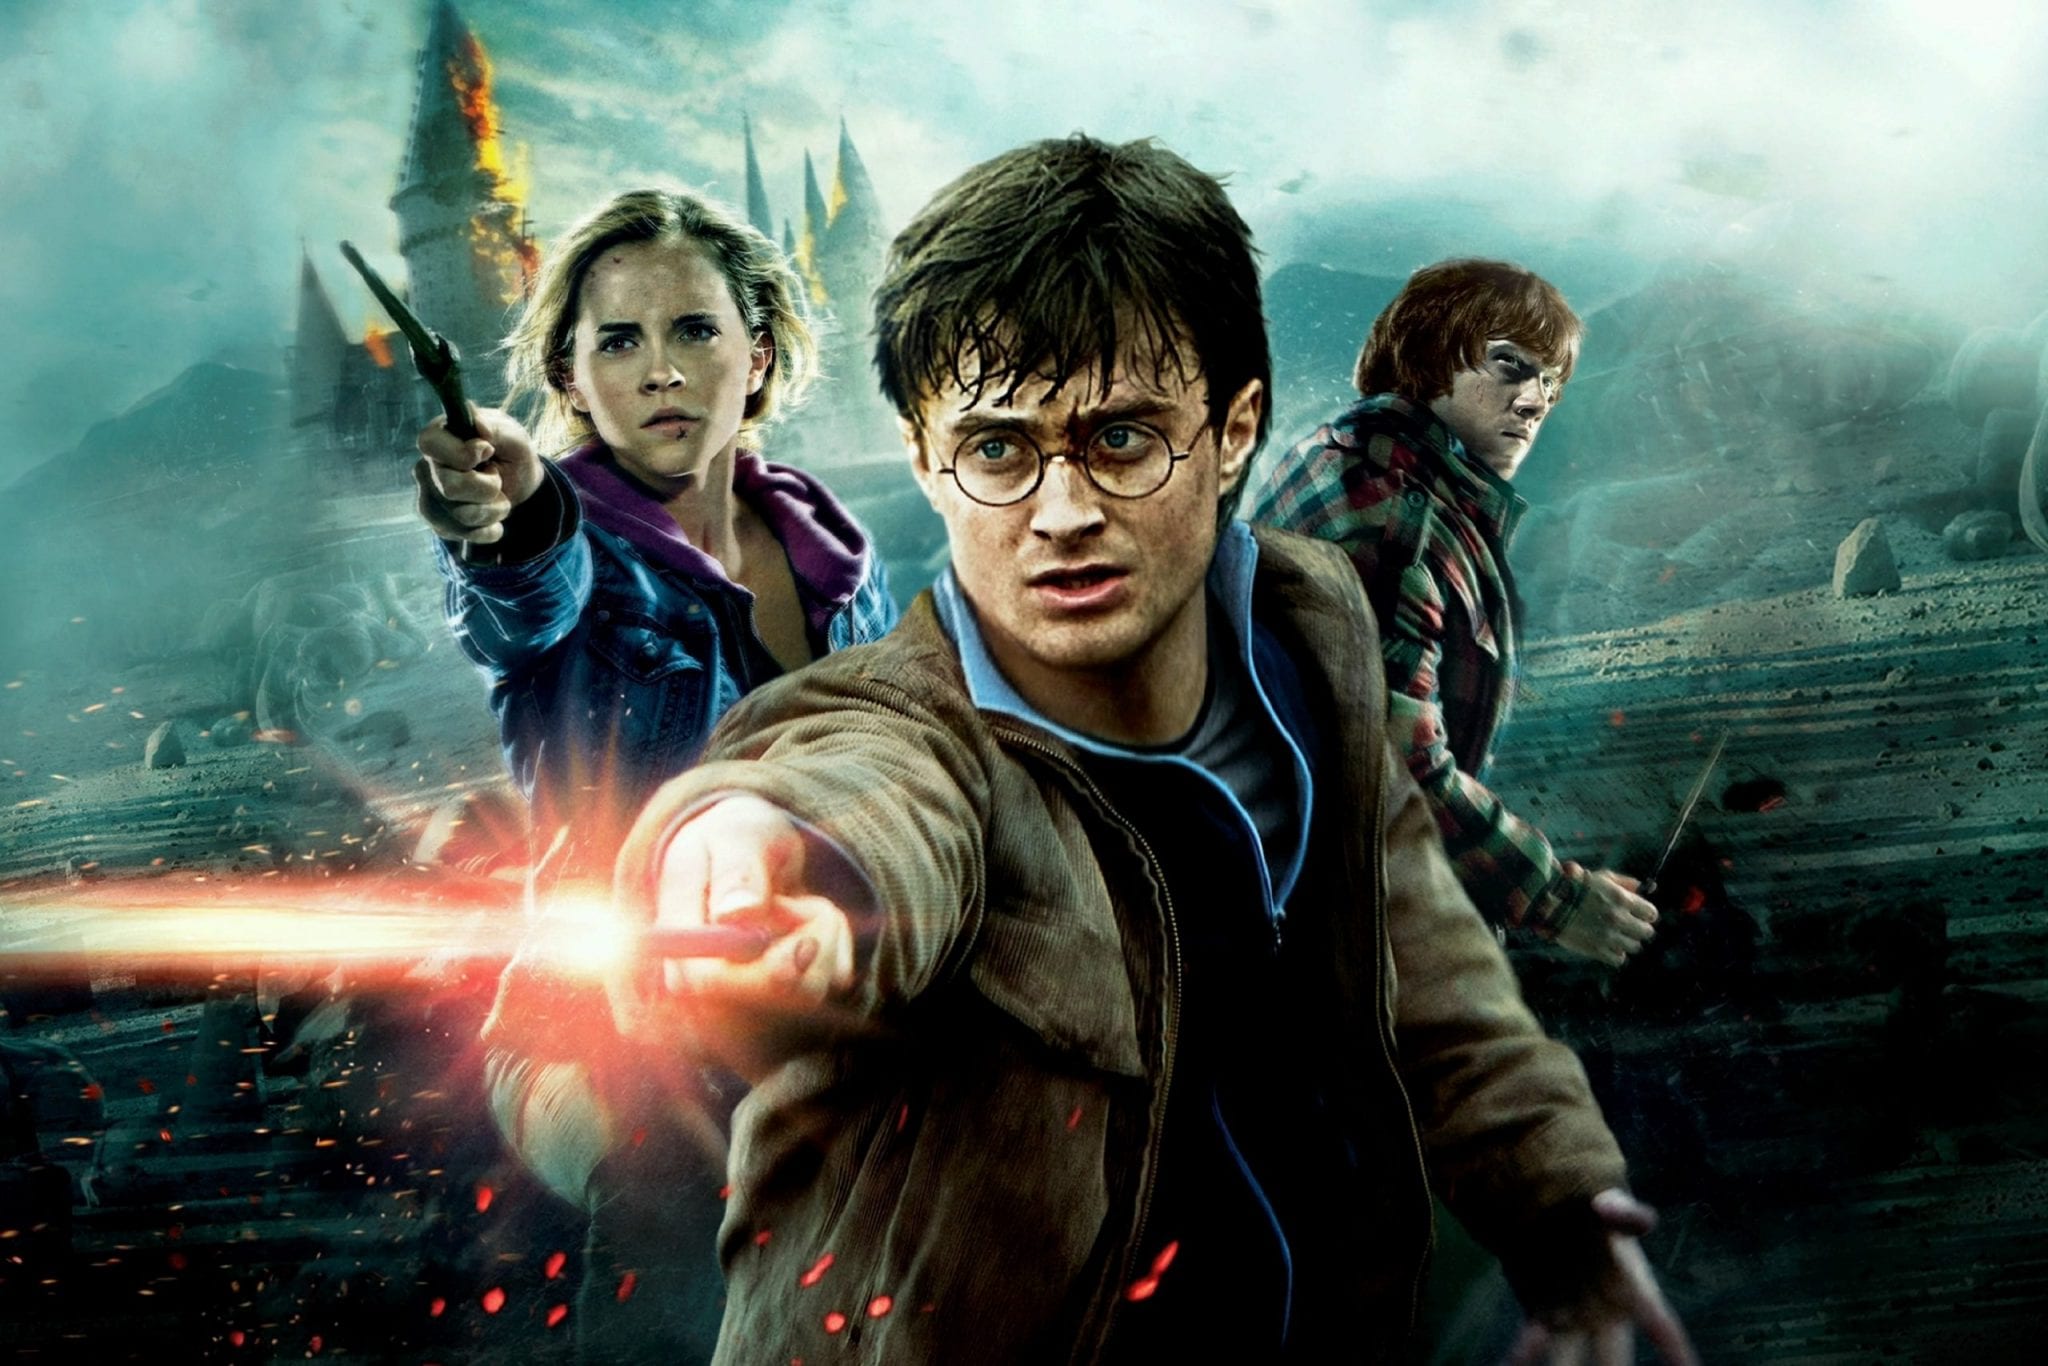 CinemaTivu: Harry Potter e i Doni della Morte – Parte 2 (Usa/Uk 2011), con Daniel Radcliffe, Rupert Grint ed Emma Watson, in prime time su Italia1